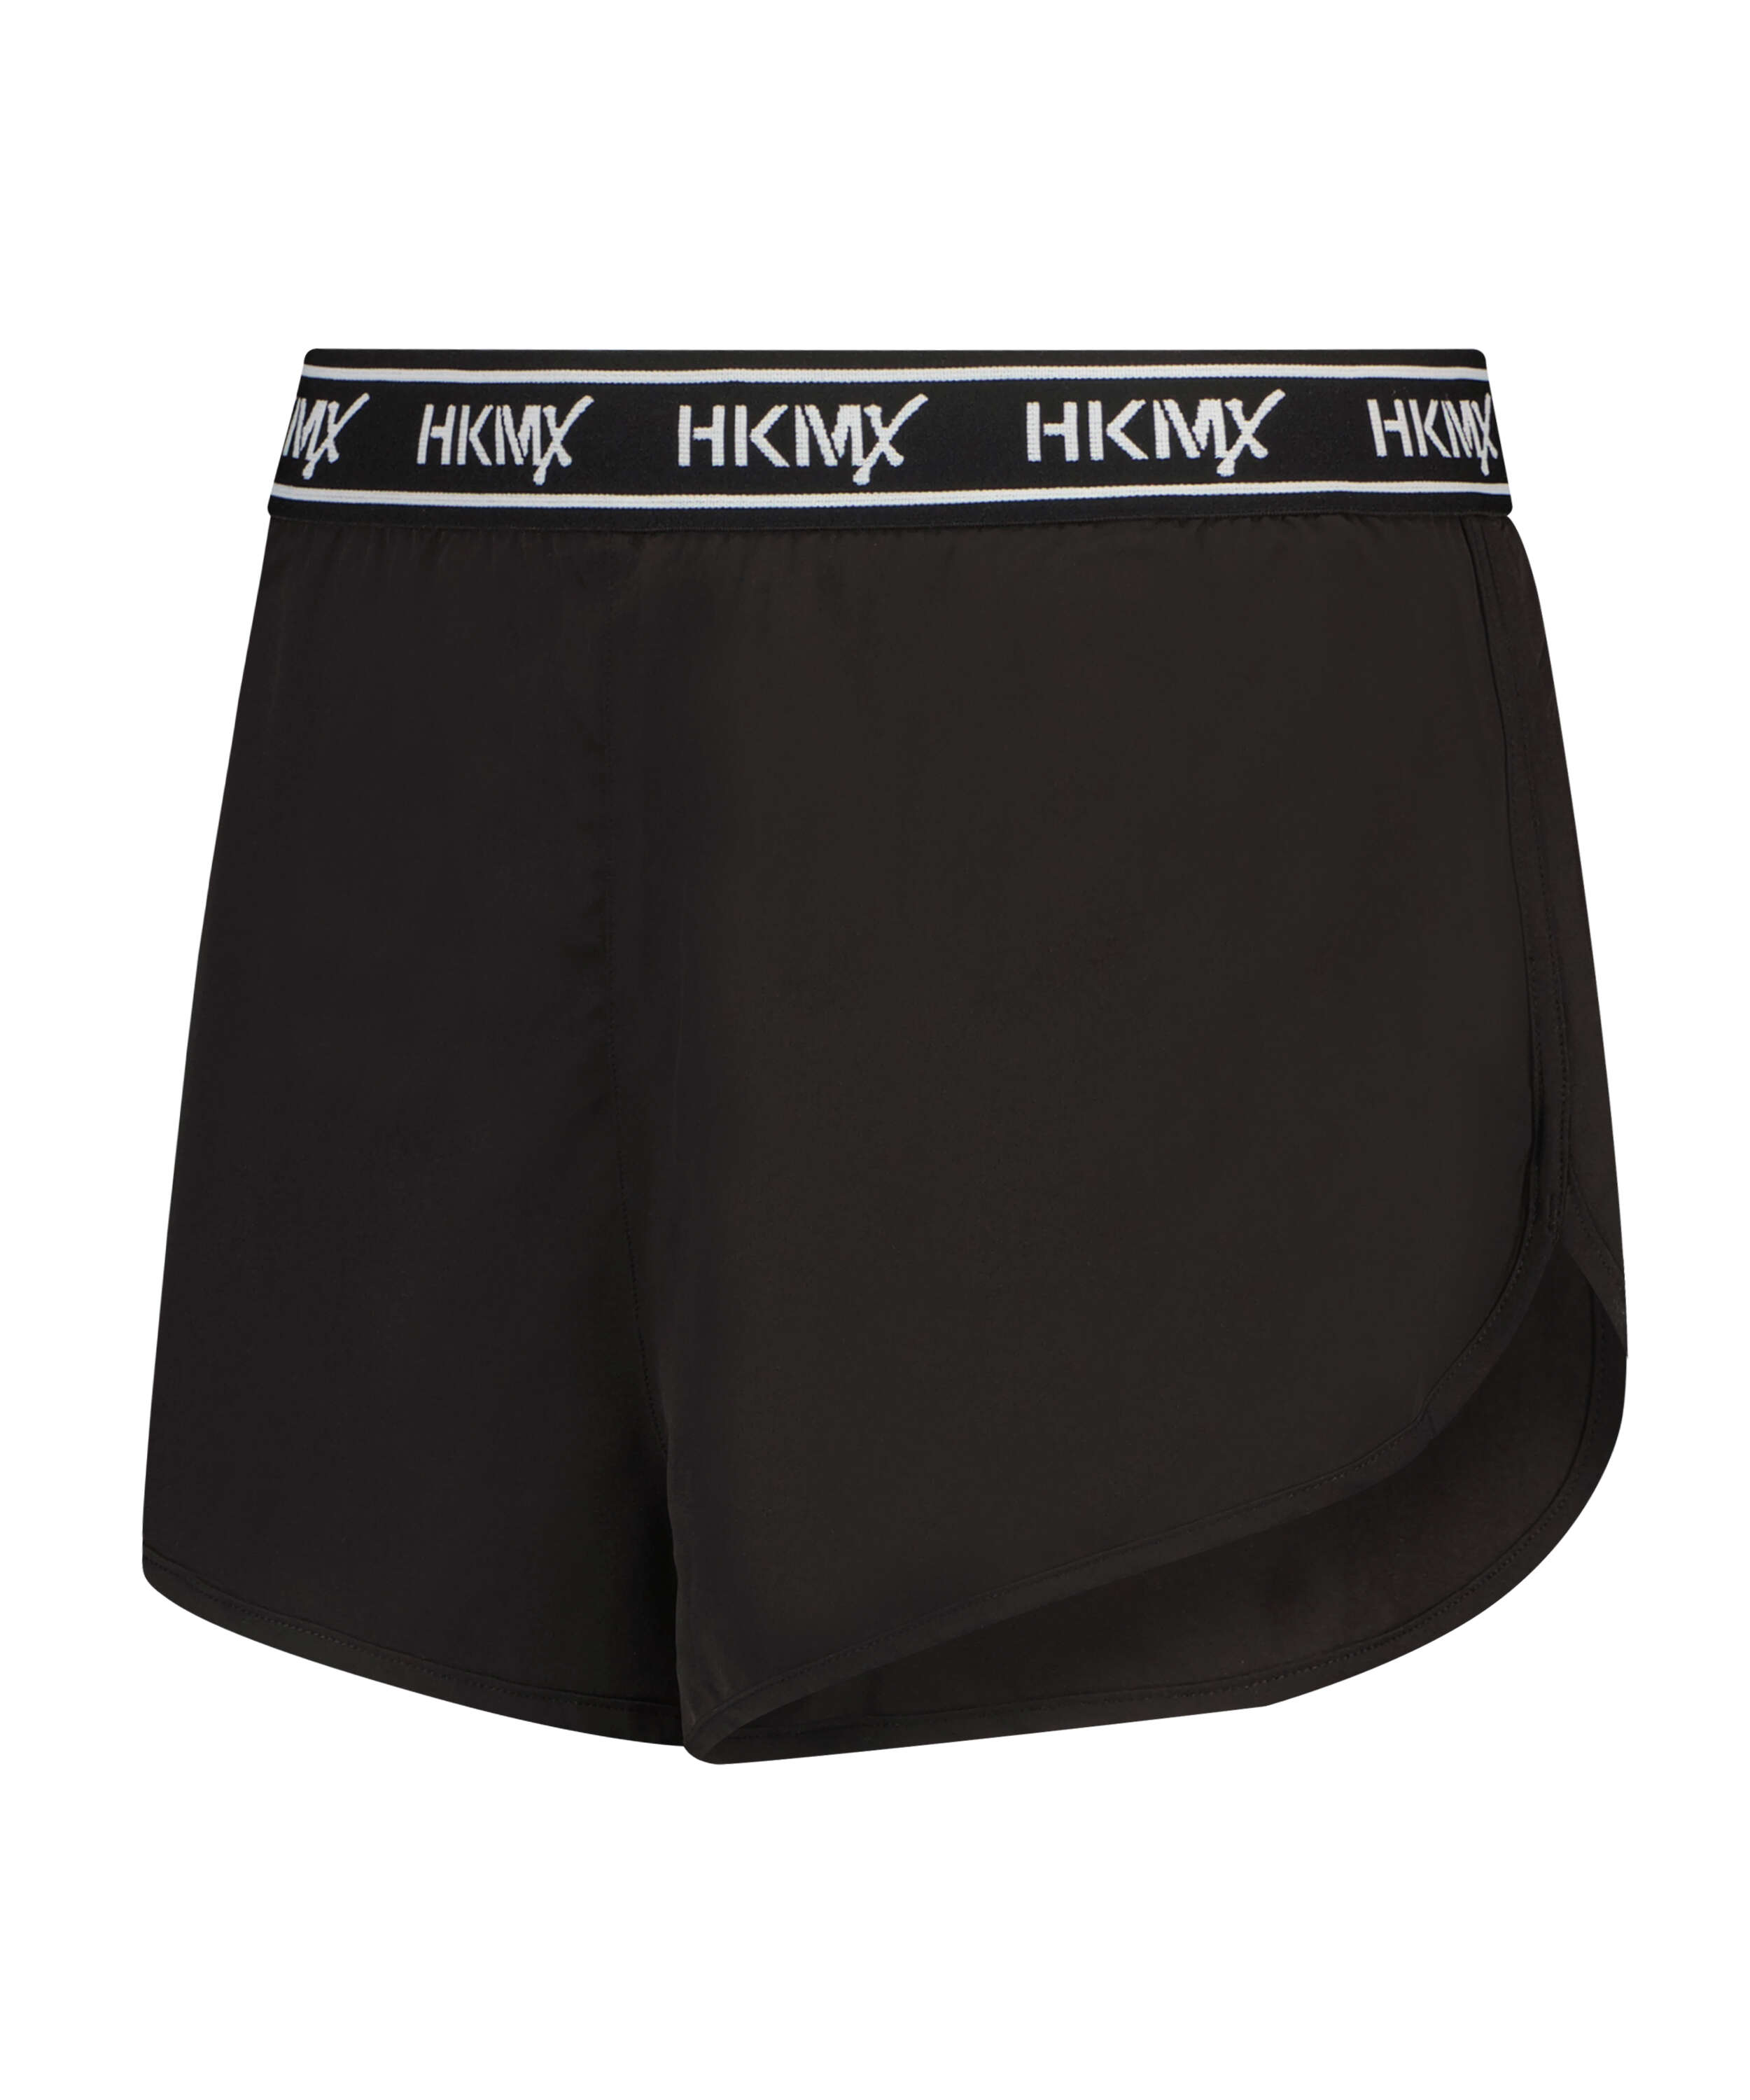 HKMX Sports Shorts, Black, main